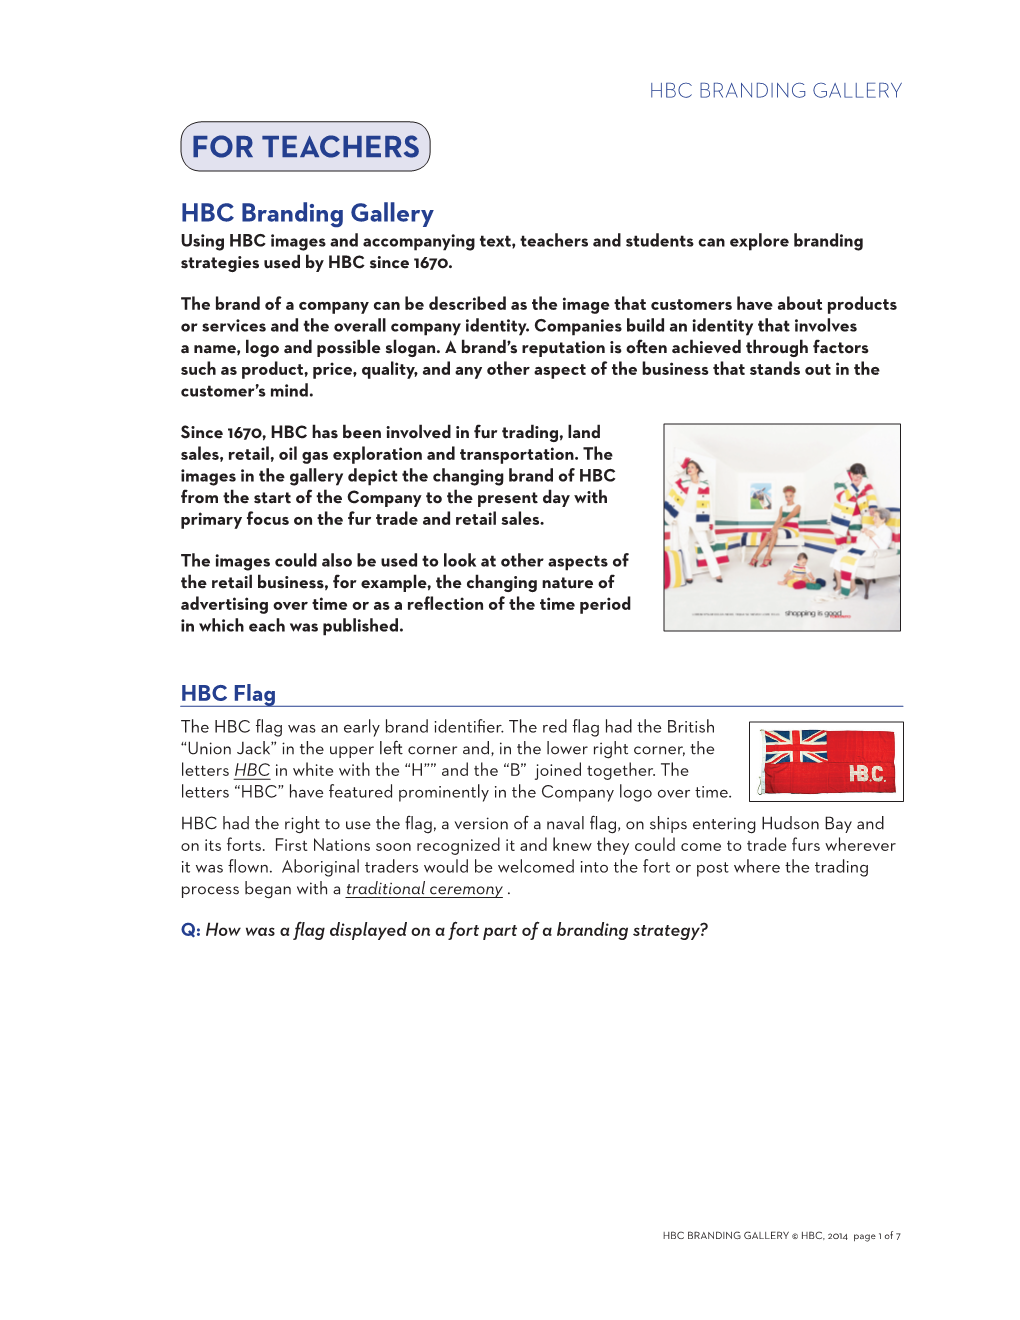 Hbc Branding Gallery for Teachers